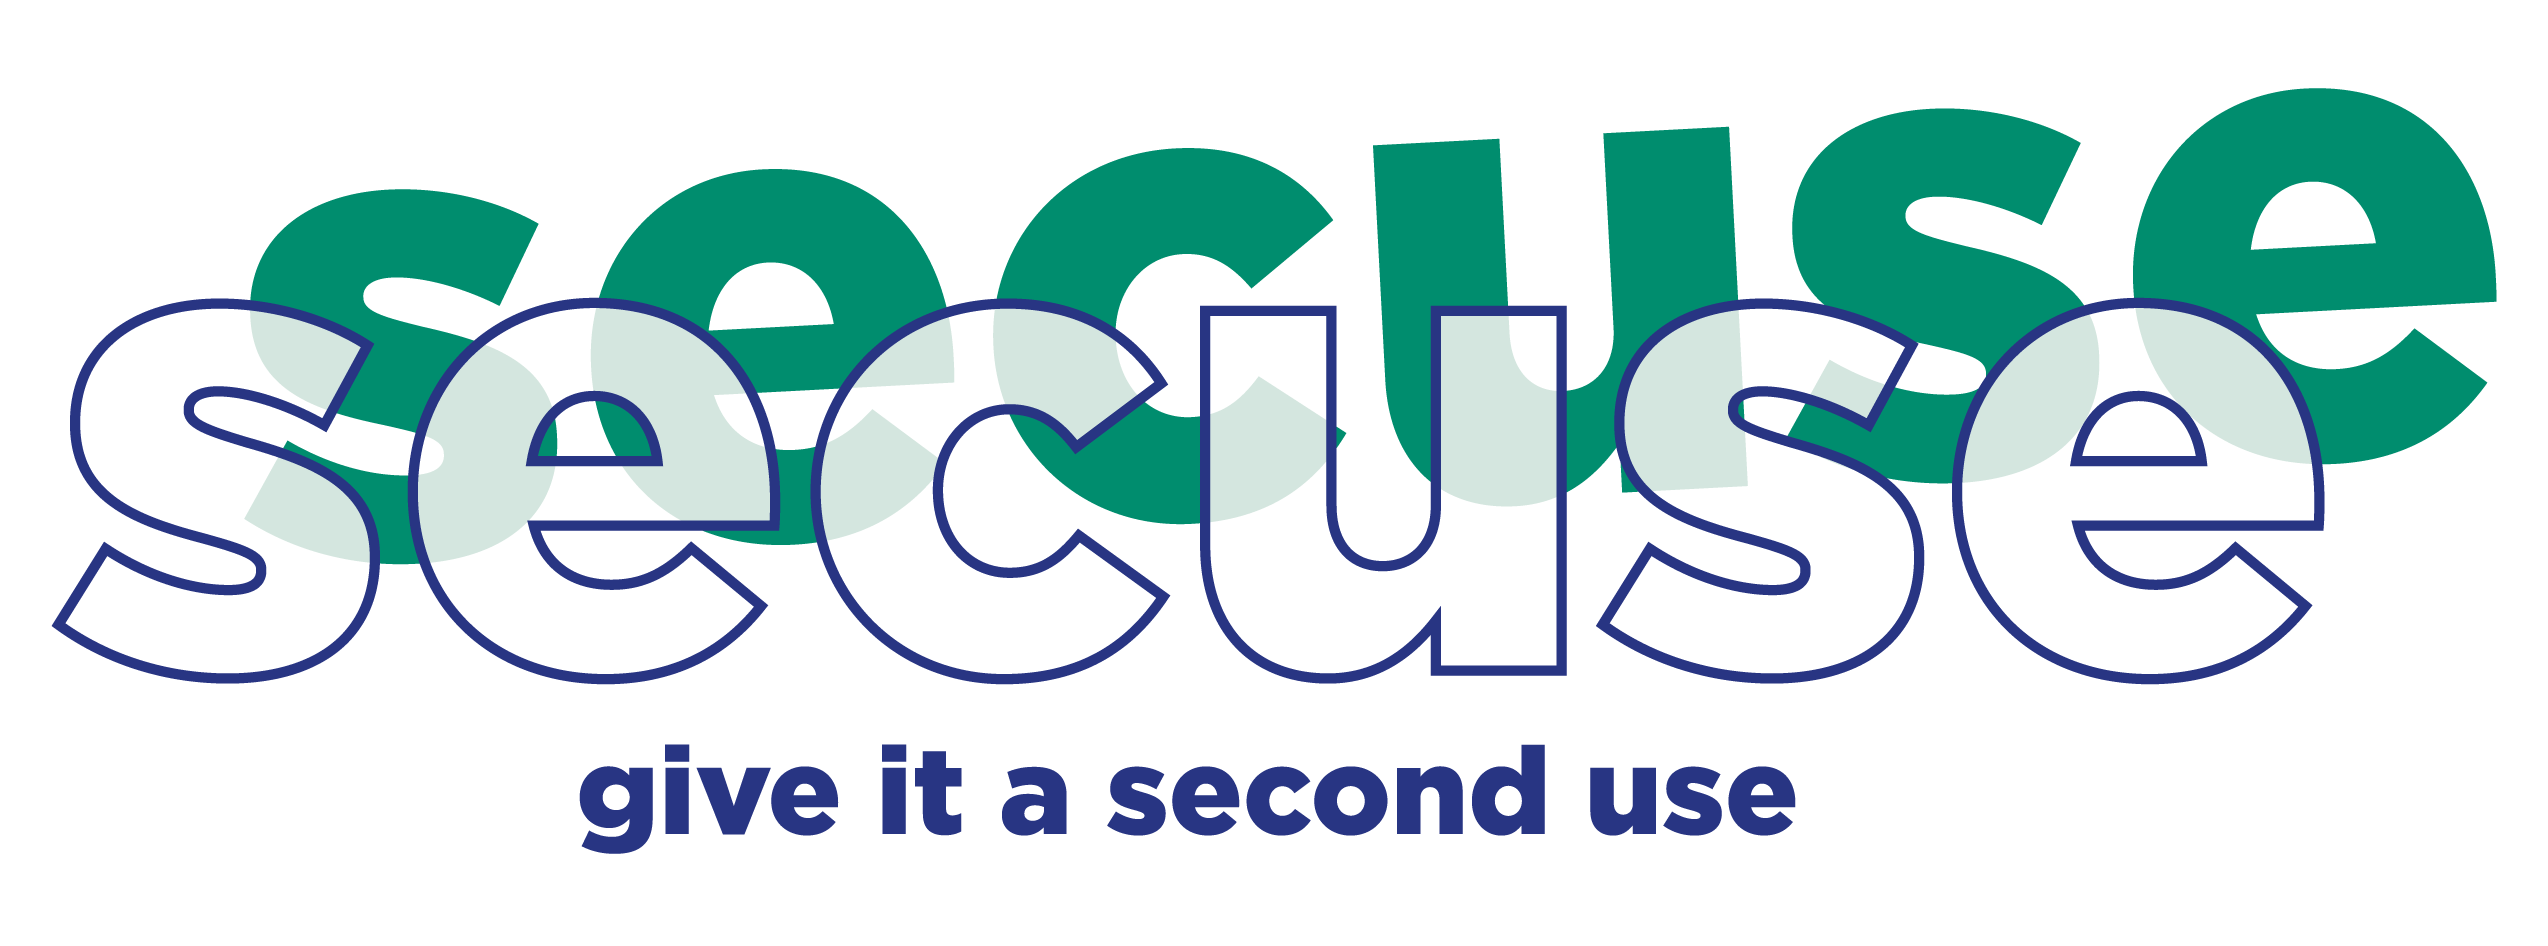 Logotip Secuse